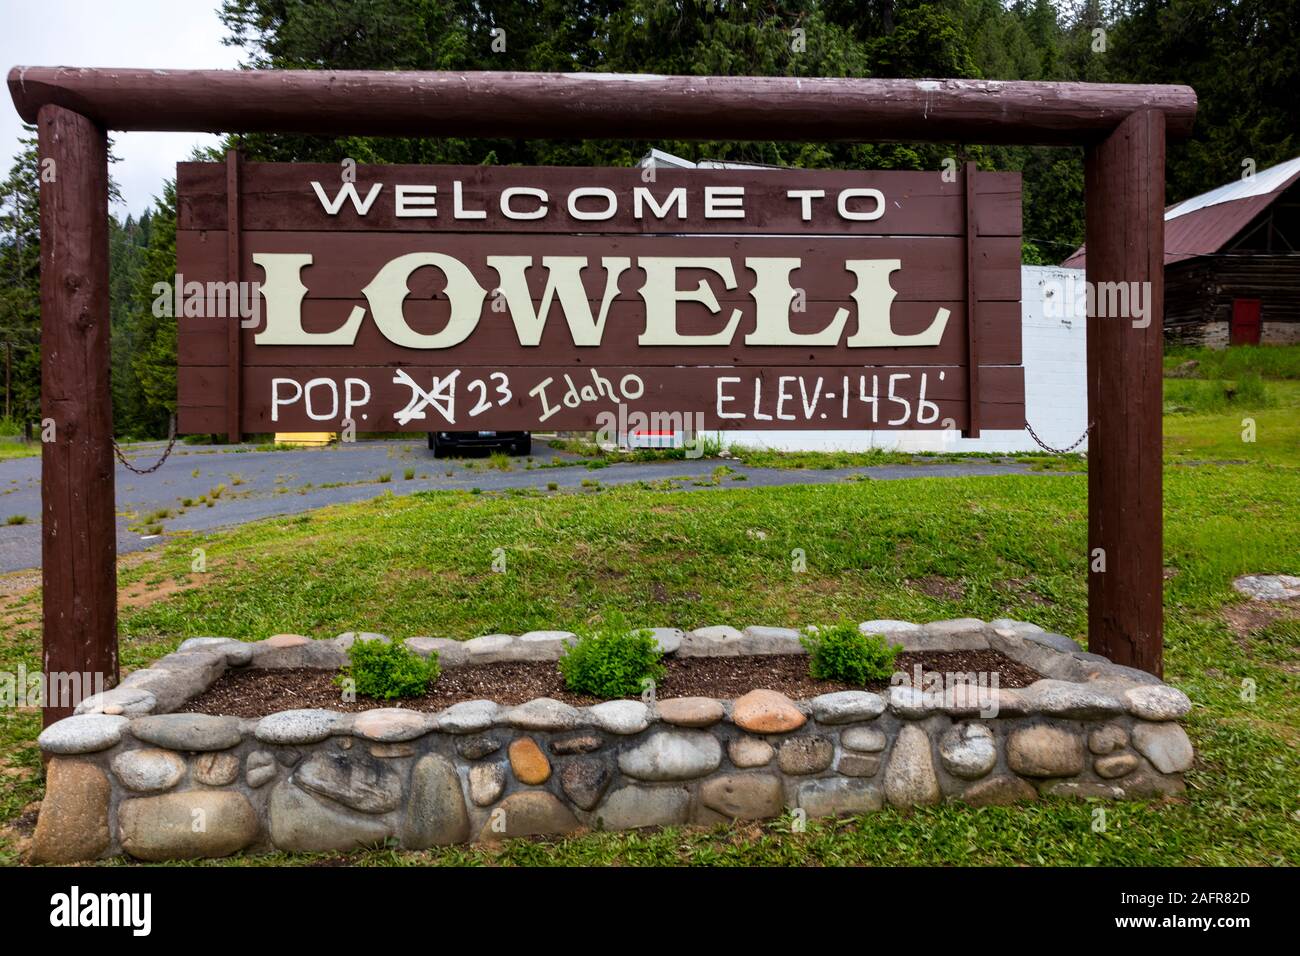 Maggio 25, 2019, in Idaho, Stati Uniti d'America - Benvenuti a Lowell Idaho, Popolazione 24, intendo 23! Elevazione 1456 Foto Stock